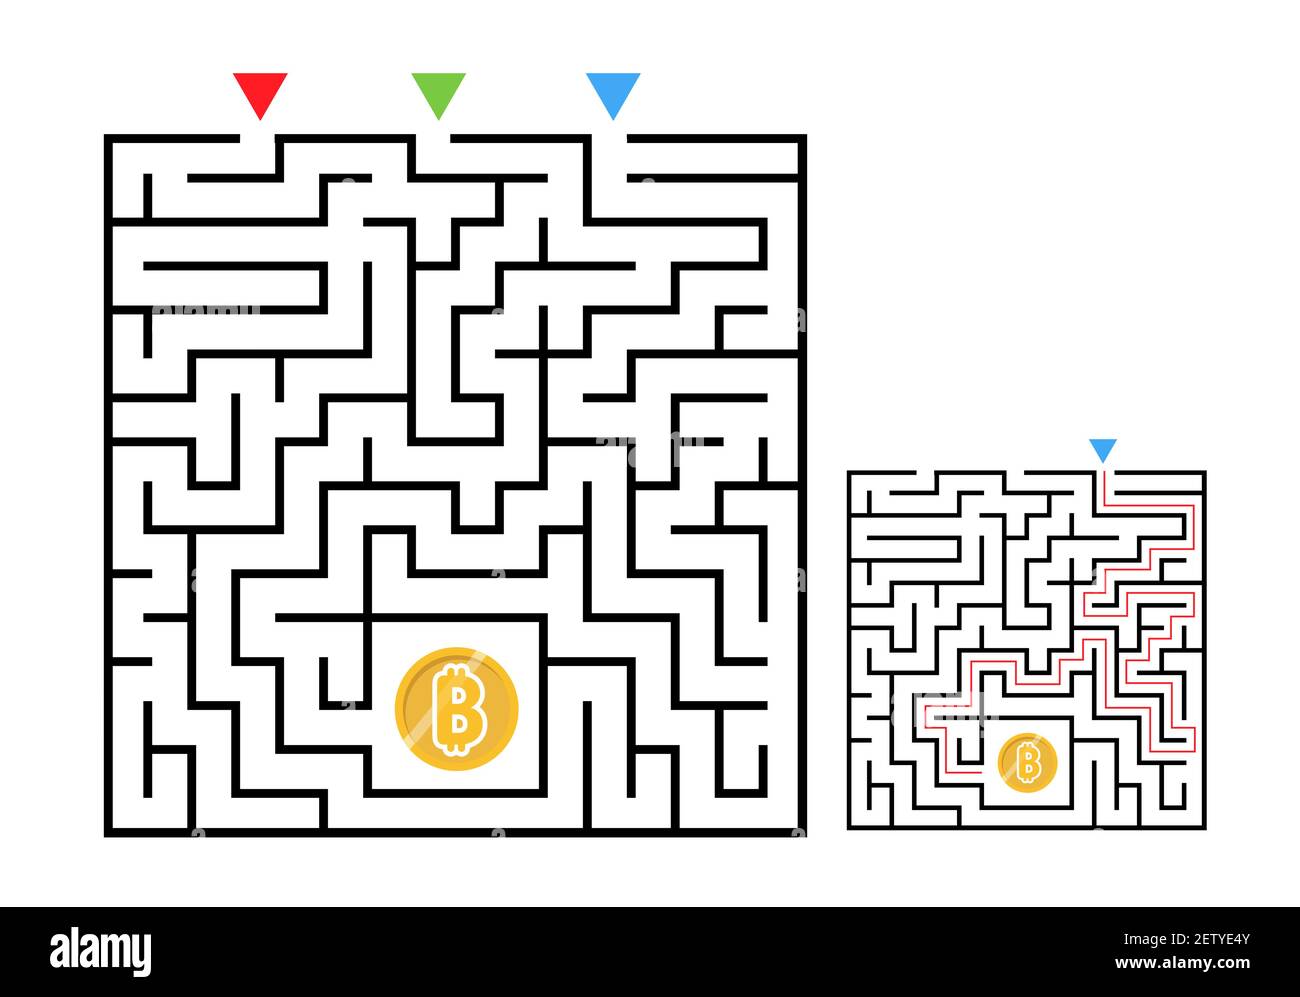 Gioco labirinto di labirinto quadrato con moneta di bit. Logica labirintica per bambini. Tre ingressi e una strada a destra per andare. Immagine piatta vettoriale Illustrazione Vettoriale